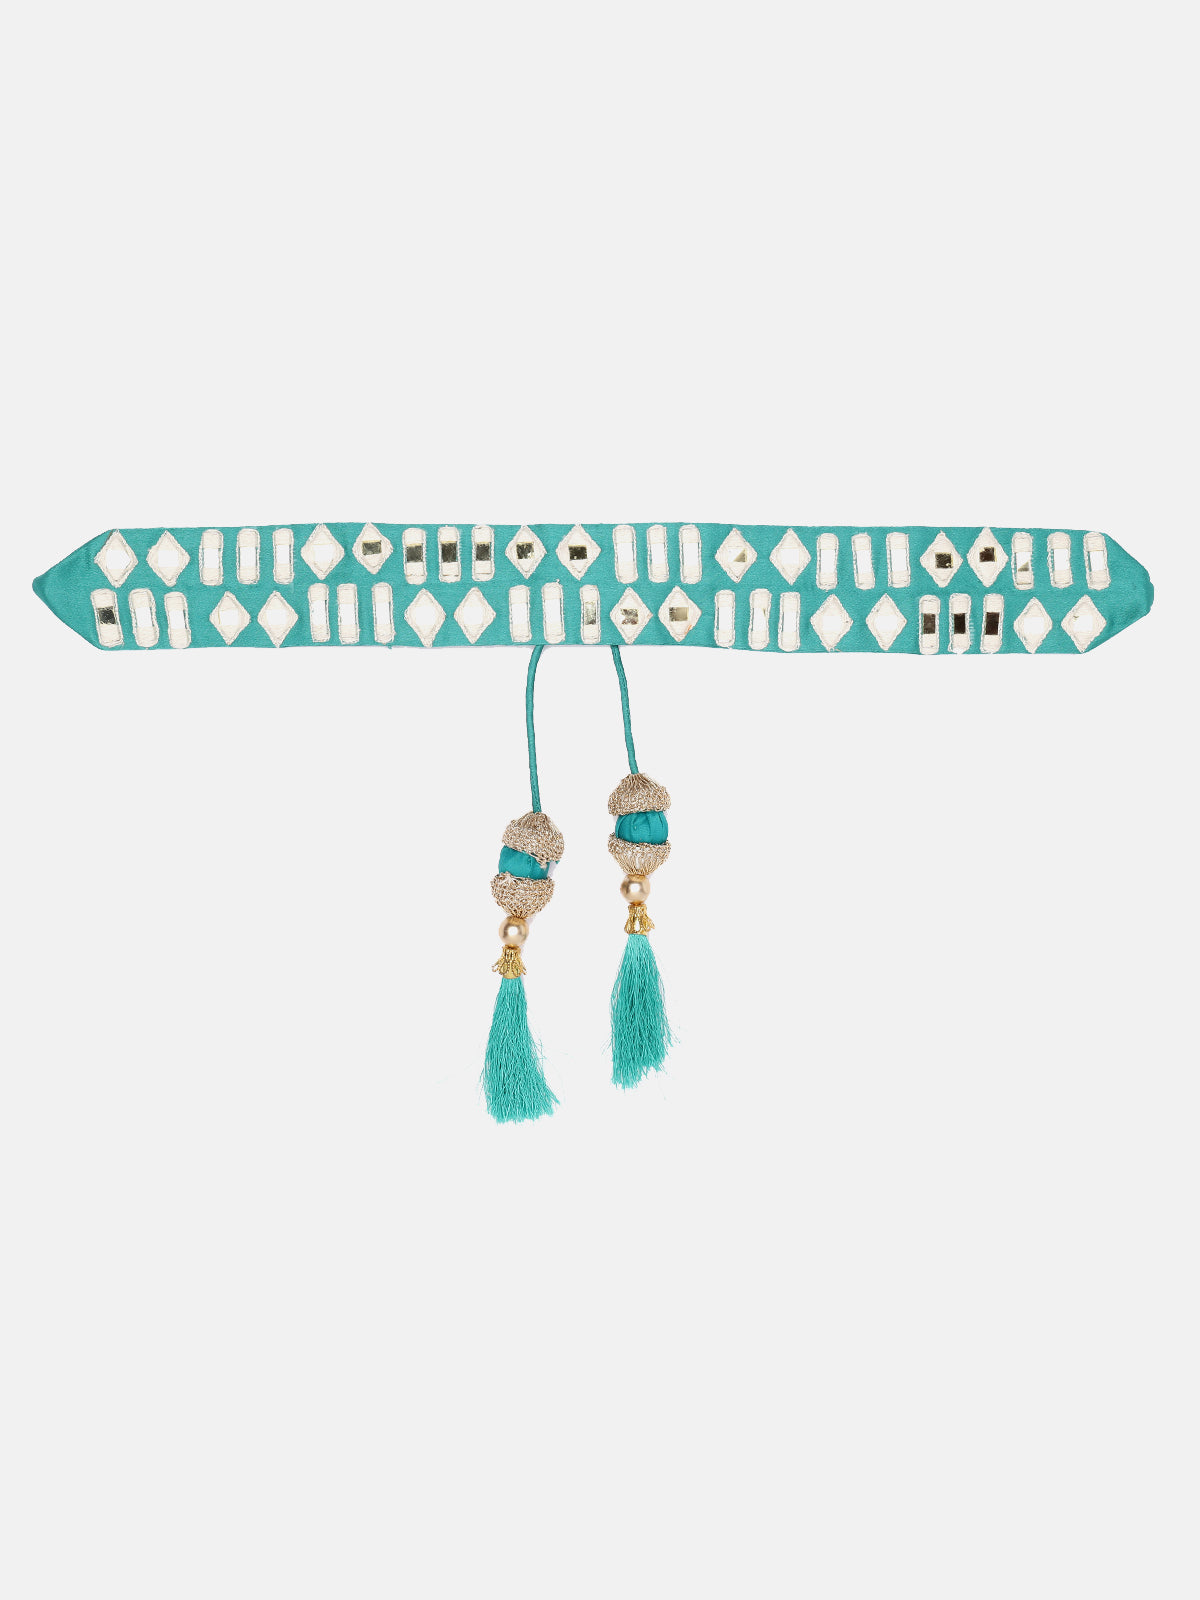 Seagreen Mirror Work Hand Made Ethnic Waist Belt With Tassels